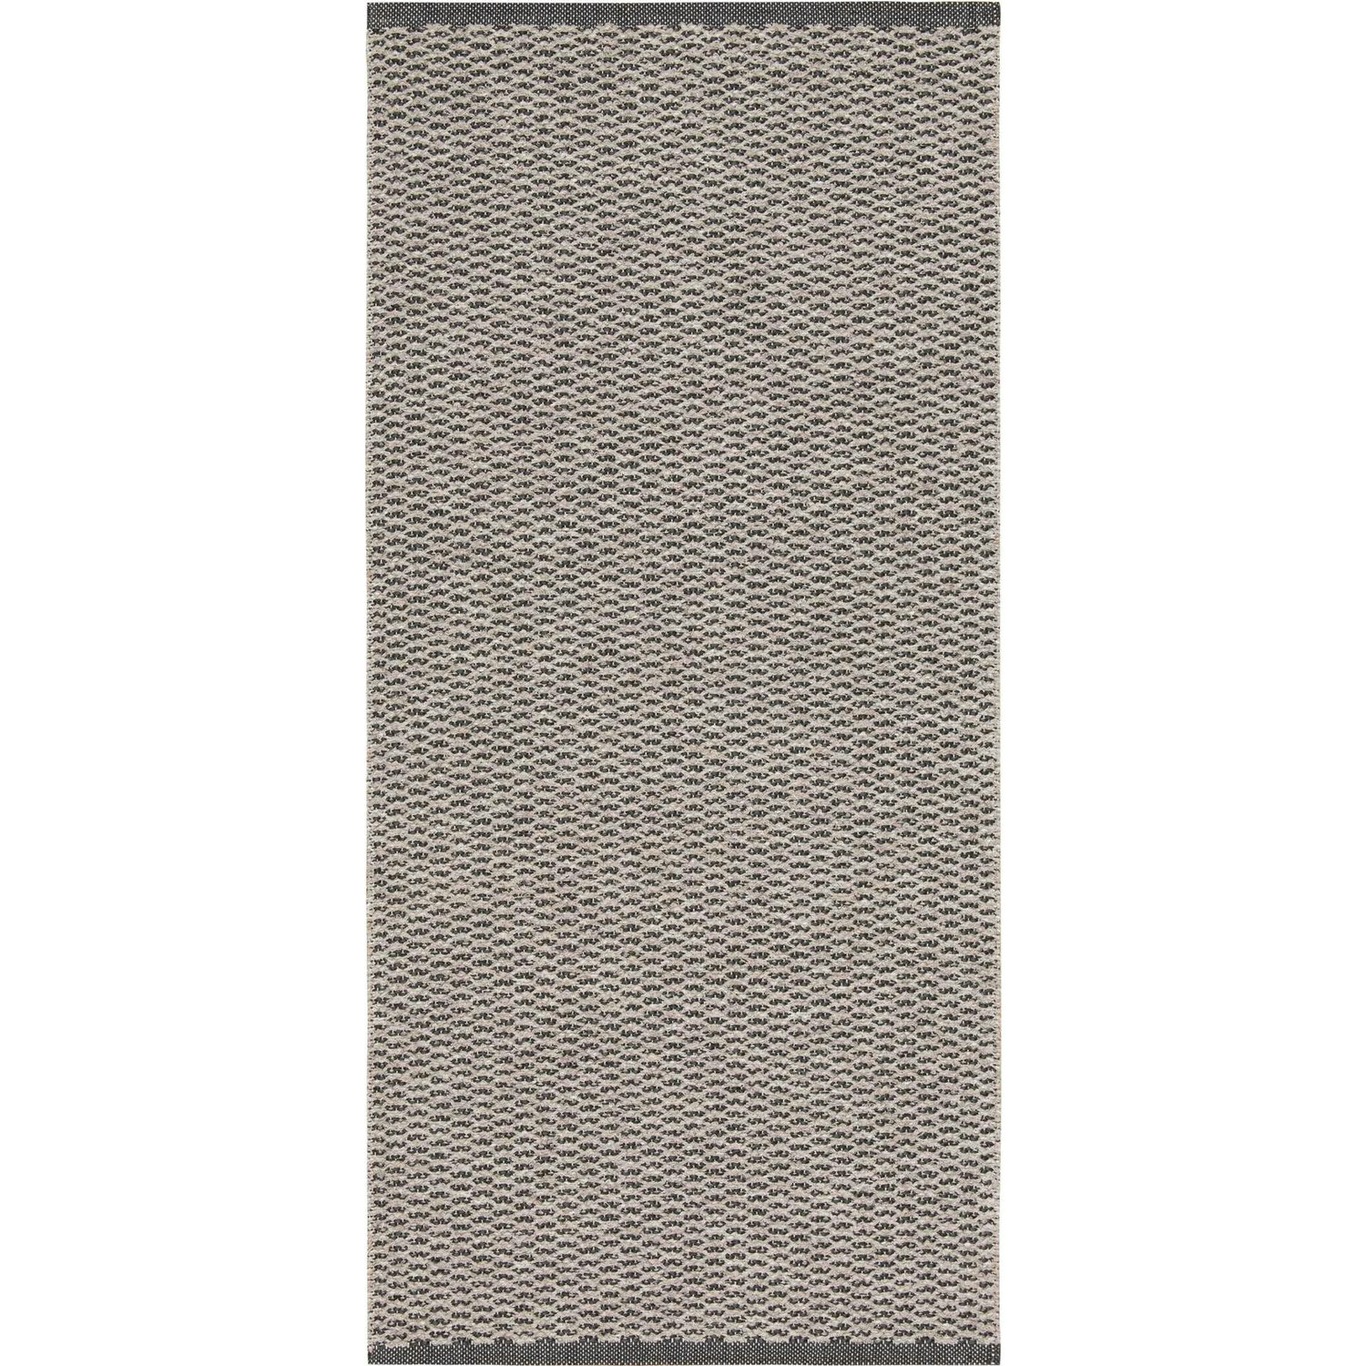 Mixed Signe Teppich 150x200 cm, Grau